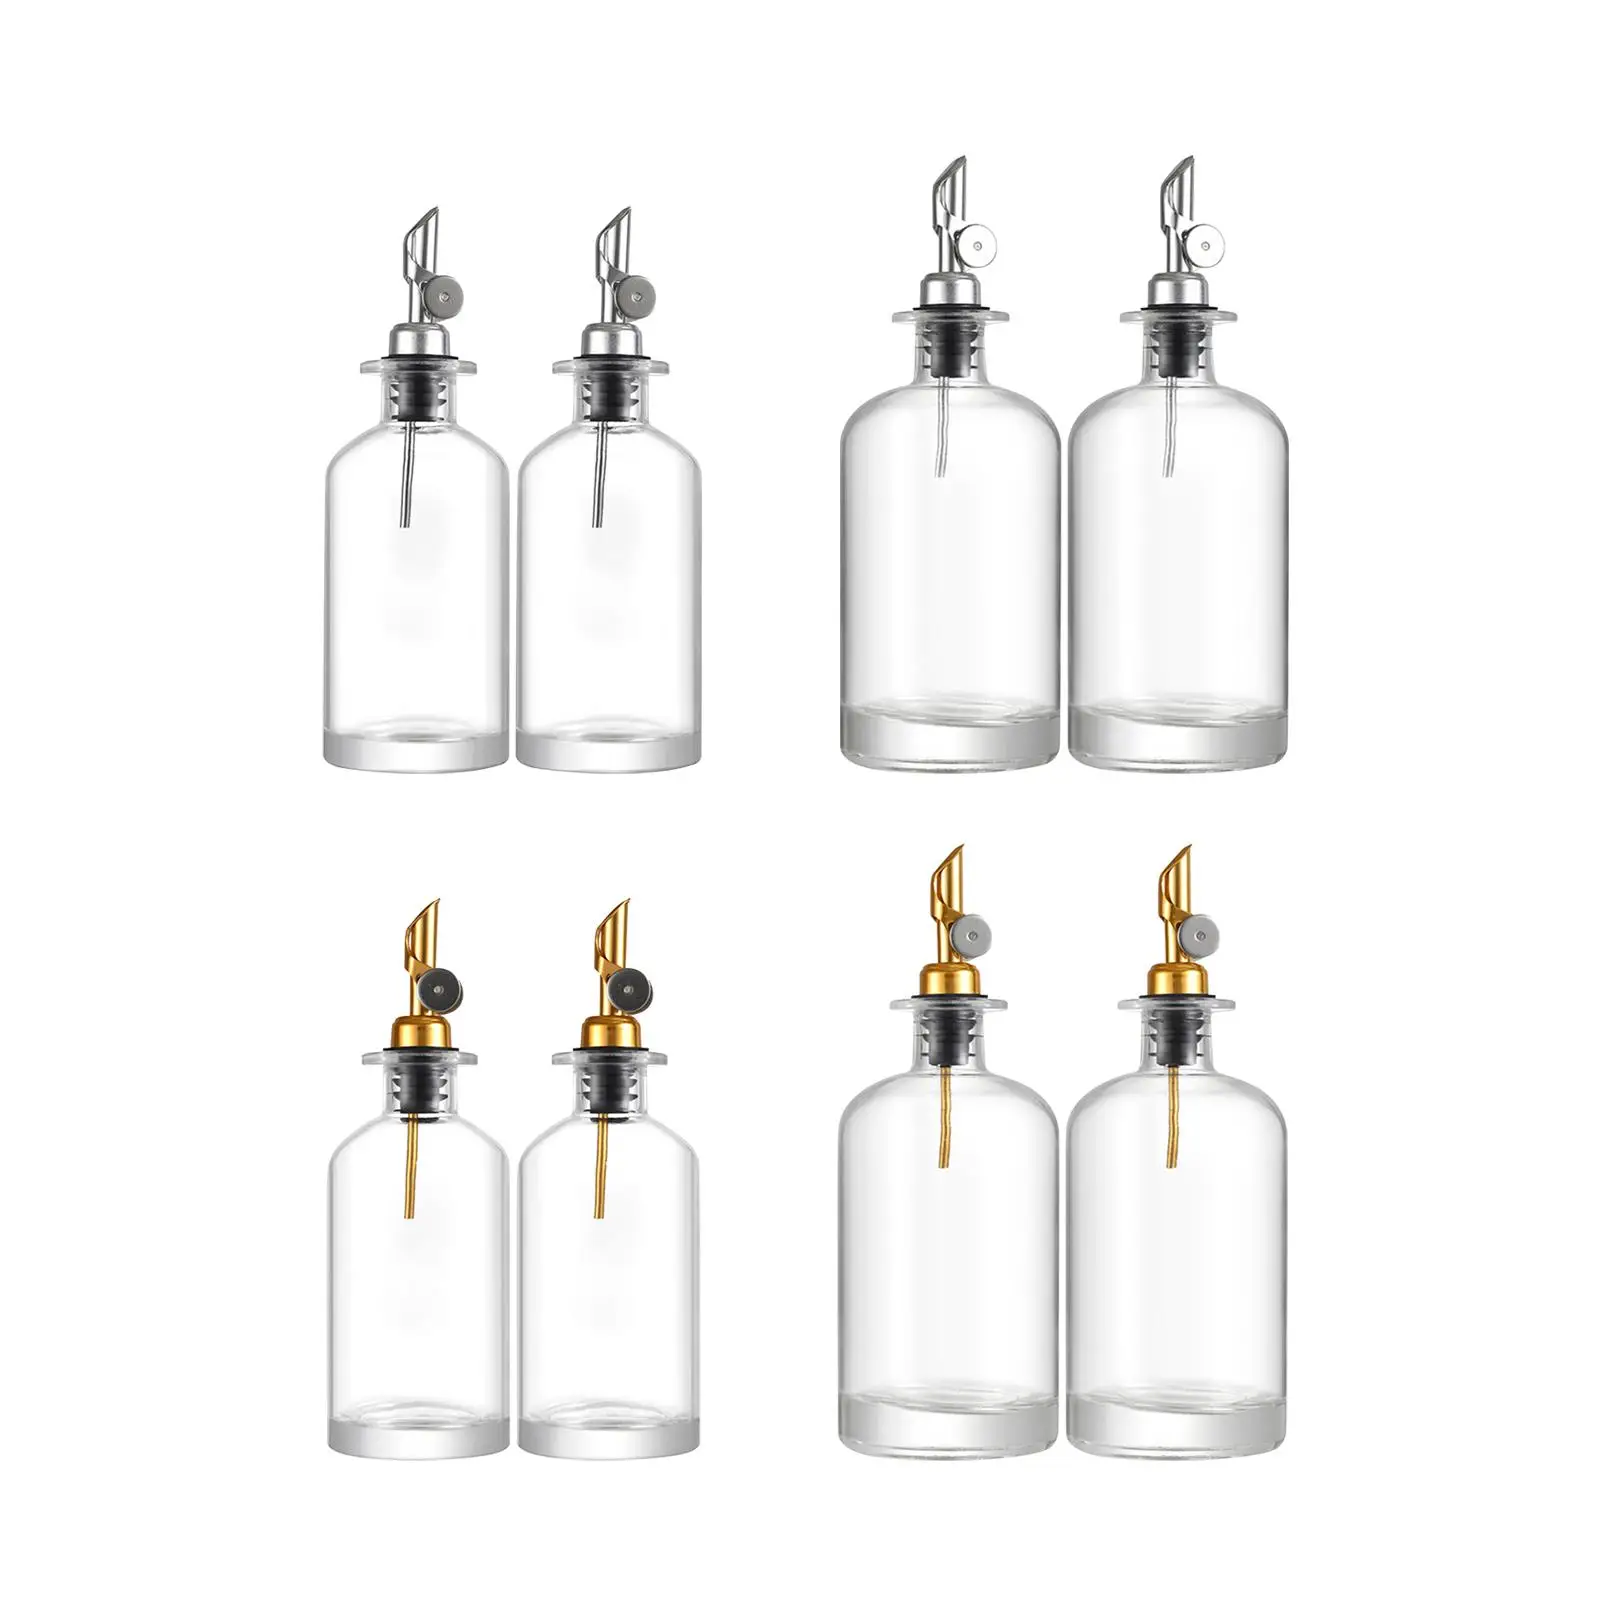 Olive Oil Dispenser Olive Oil Bottles Leakproof Kitchen Accessories Glass Oil